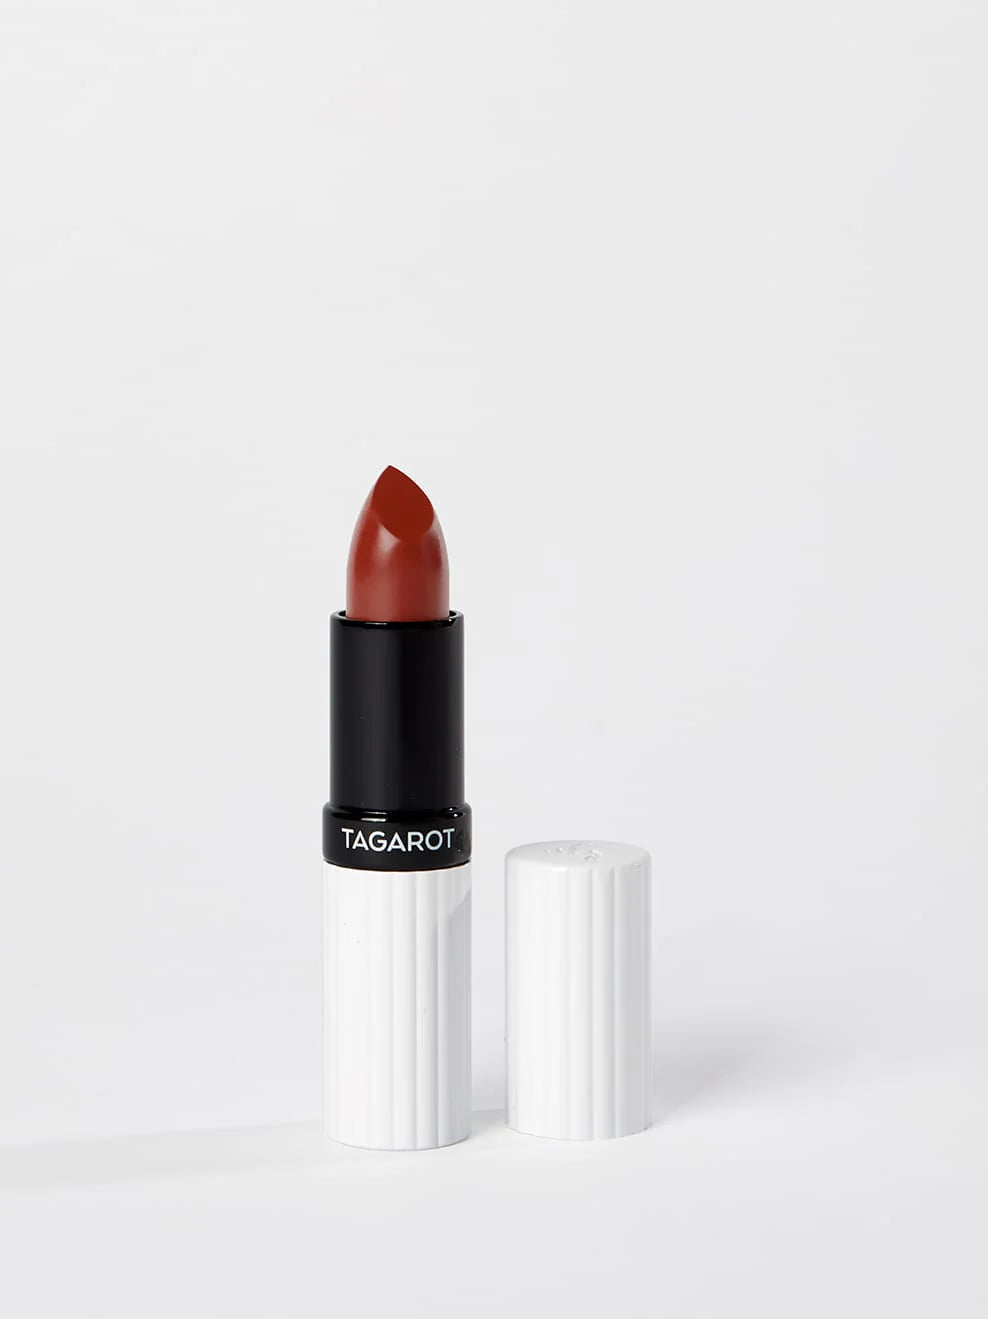 TAGAROT VEGAN Lipstick, 3.5g